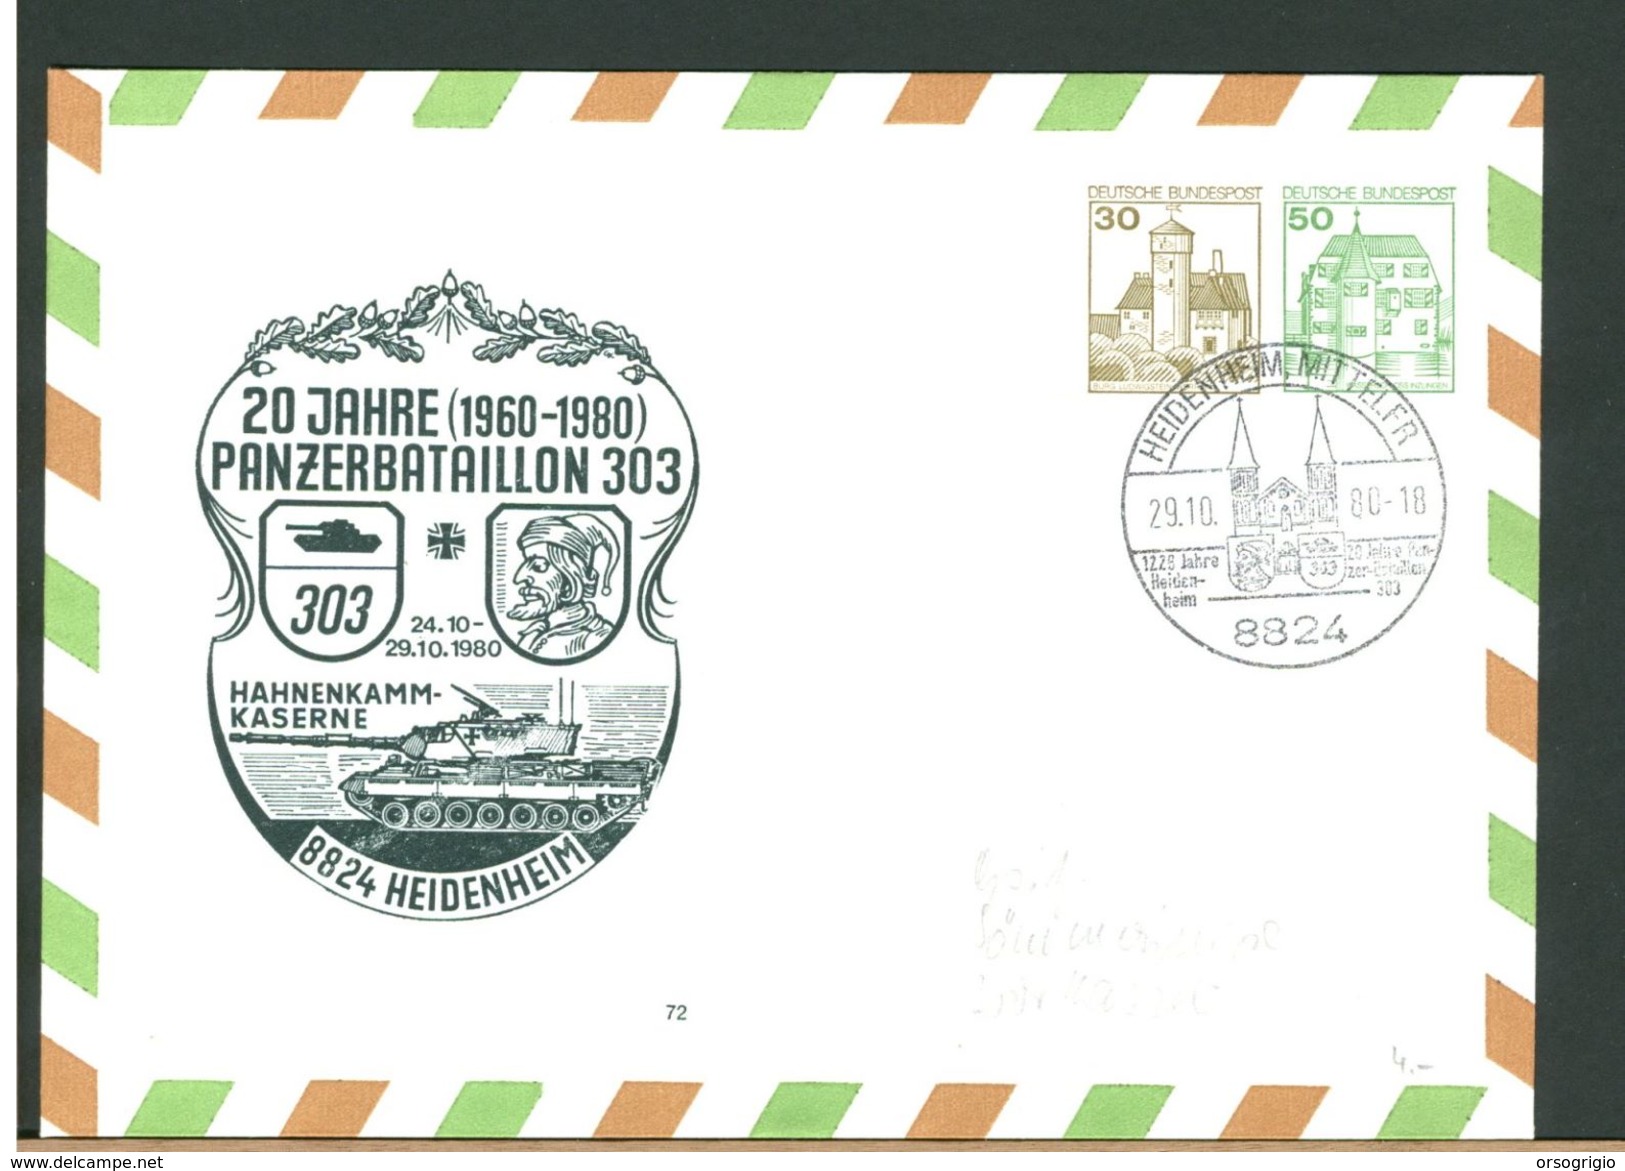 GERMANY - BUNDESWEHR - HEIDENHEIM - HAHNENKAMM KASERNE - PANZER BATAILLON 303 - Private Covers - Mint